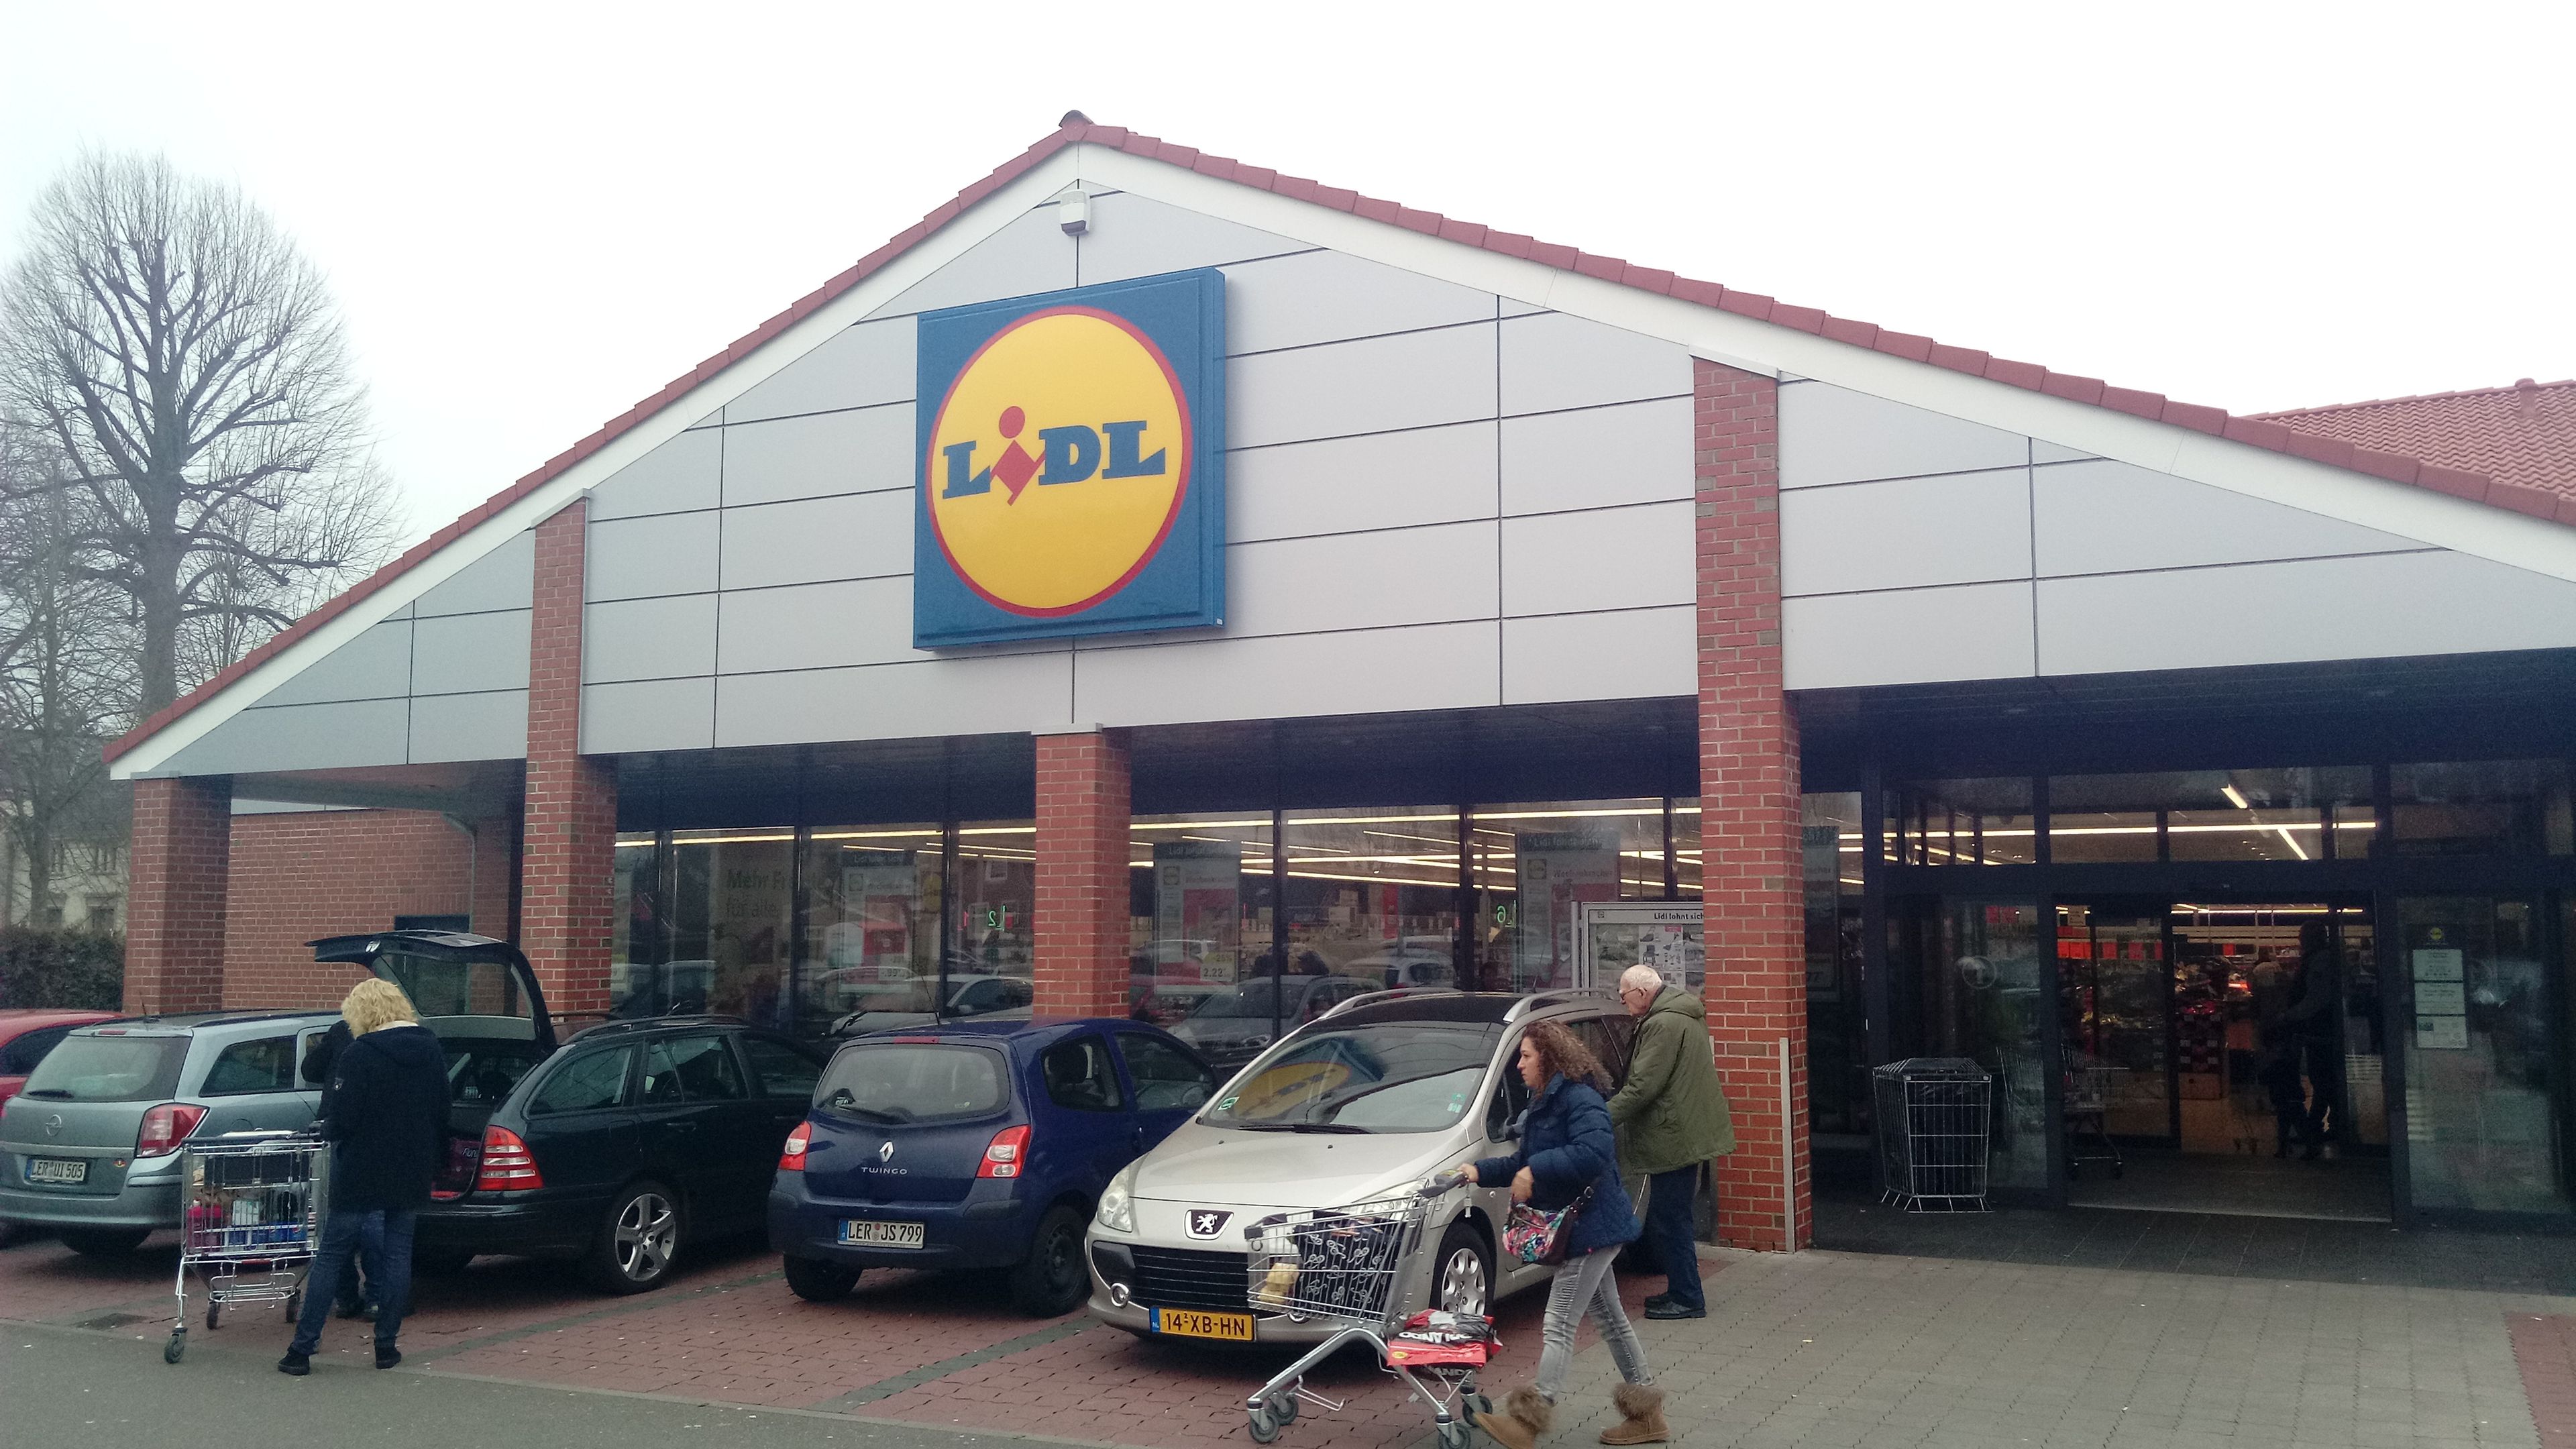 Supermercado Lidl